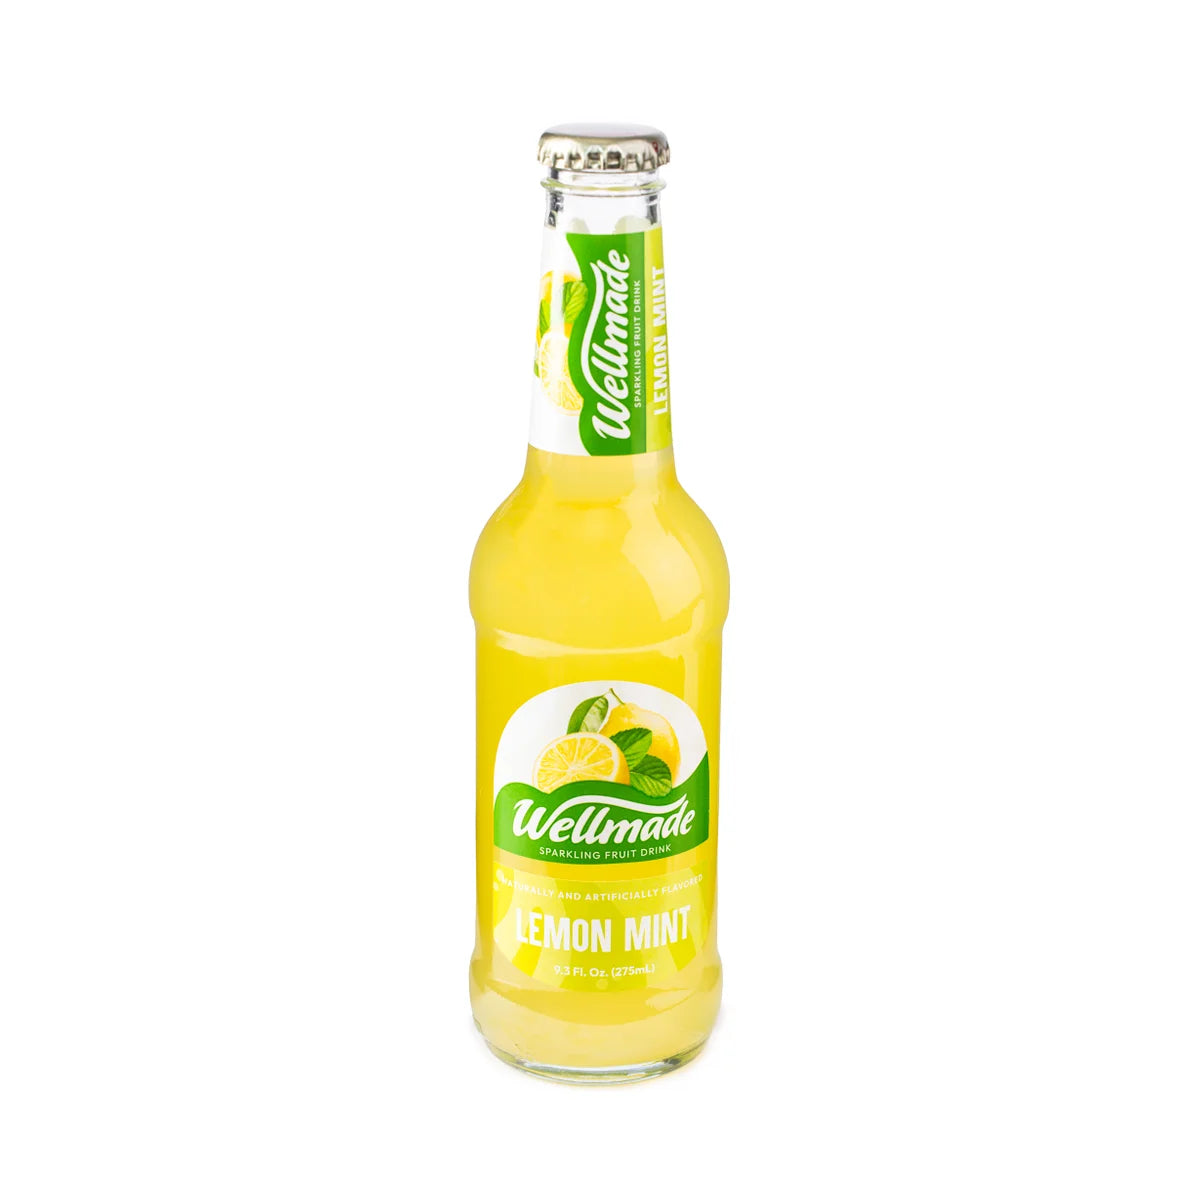 wellmade-lemon-mint-sparkling-drink-9-3-fl-oz